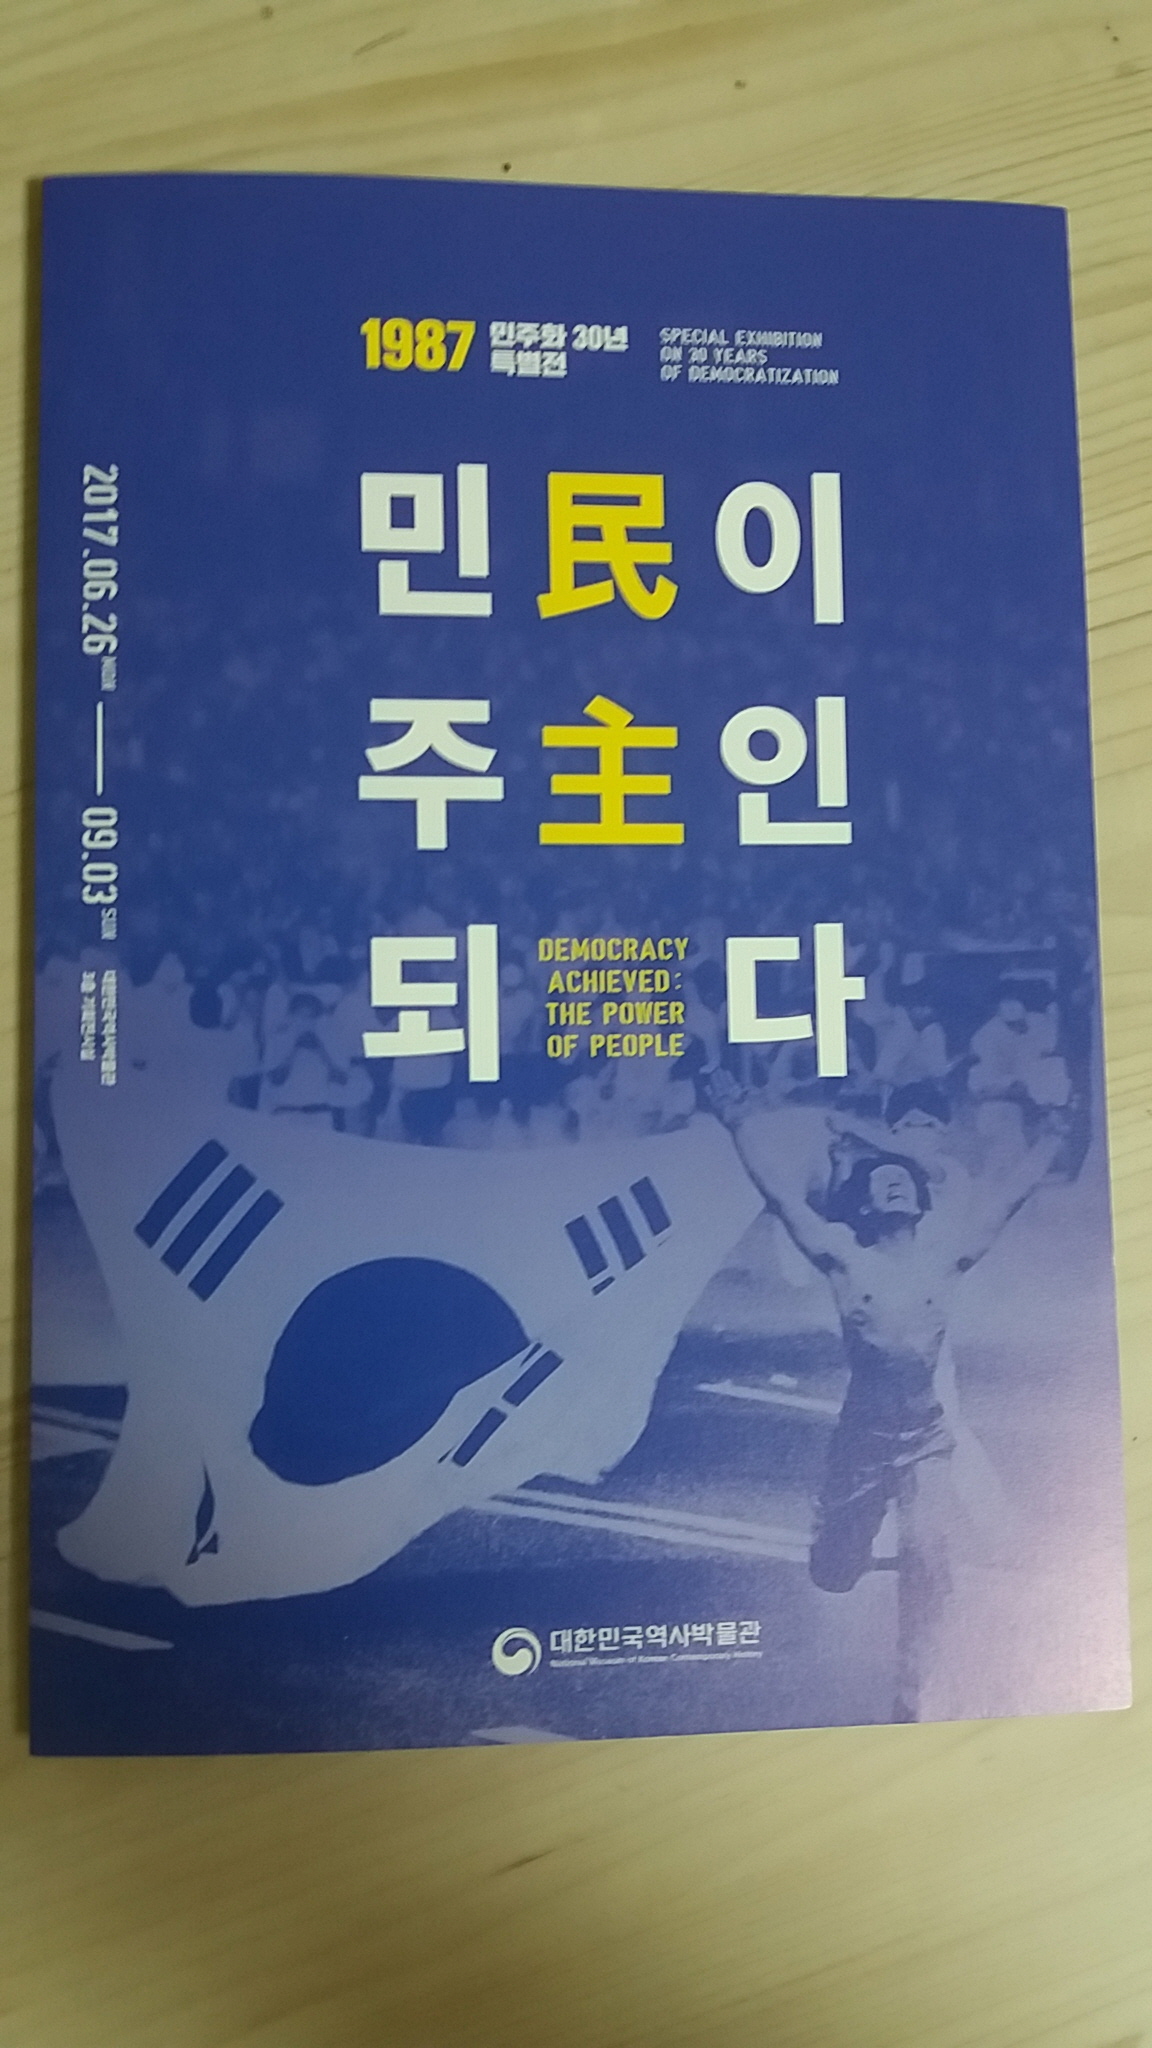 대한민국역사박물관이 주최한 민주화 30년 특별전 '민이 주인 되다' 소개 팸플릿